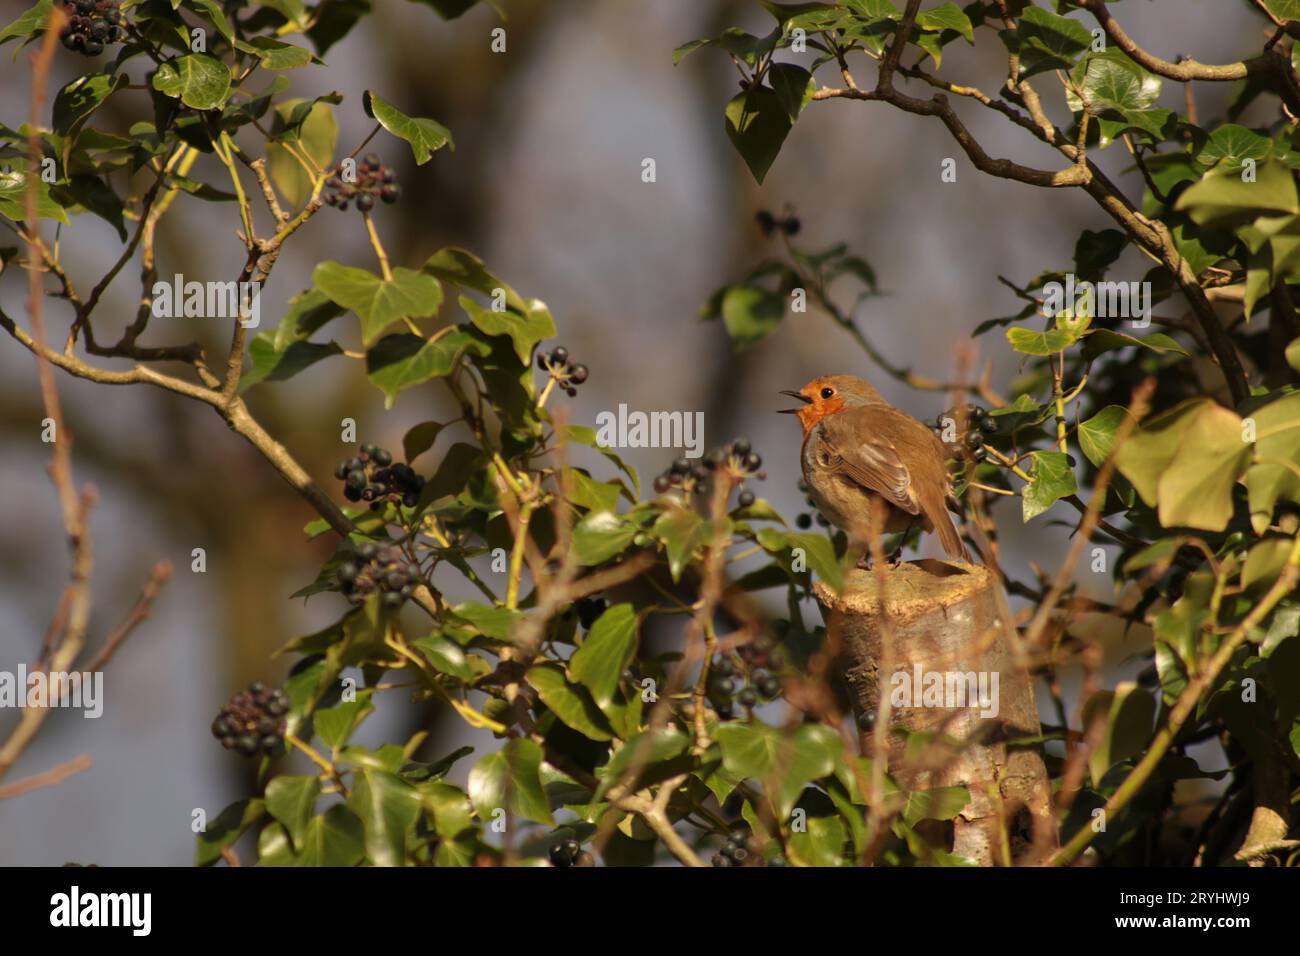 Ein sehr niedlicher Rotkehlchen-Vogel, der mit seinem offenen Schnabel singt, saß auf einem gesägten Baumstamm, umgeben von grünem Efeu und dunklen Beeren in der Sonne. Stockfoto